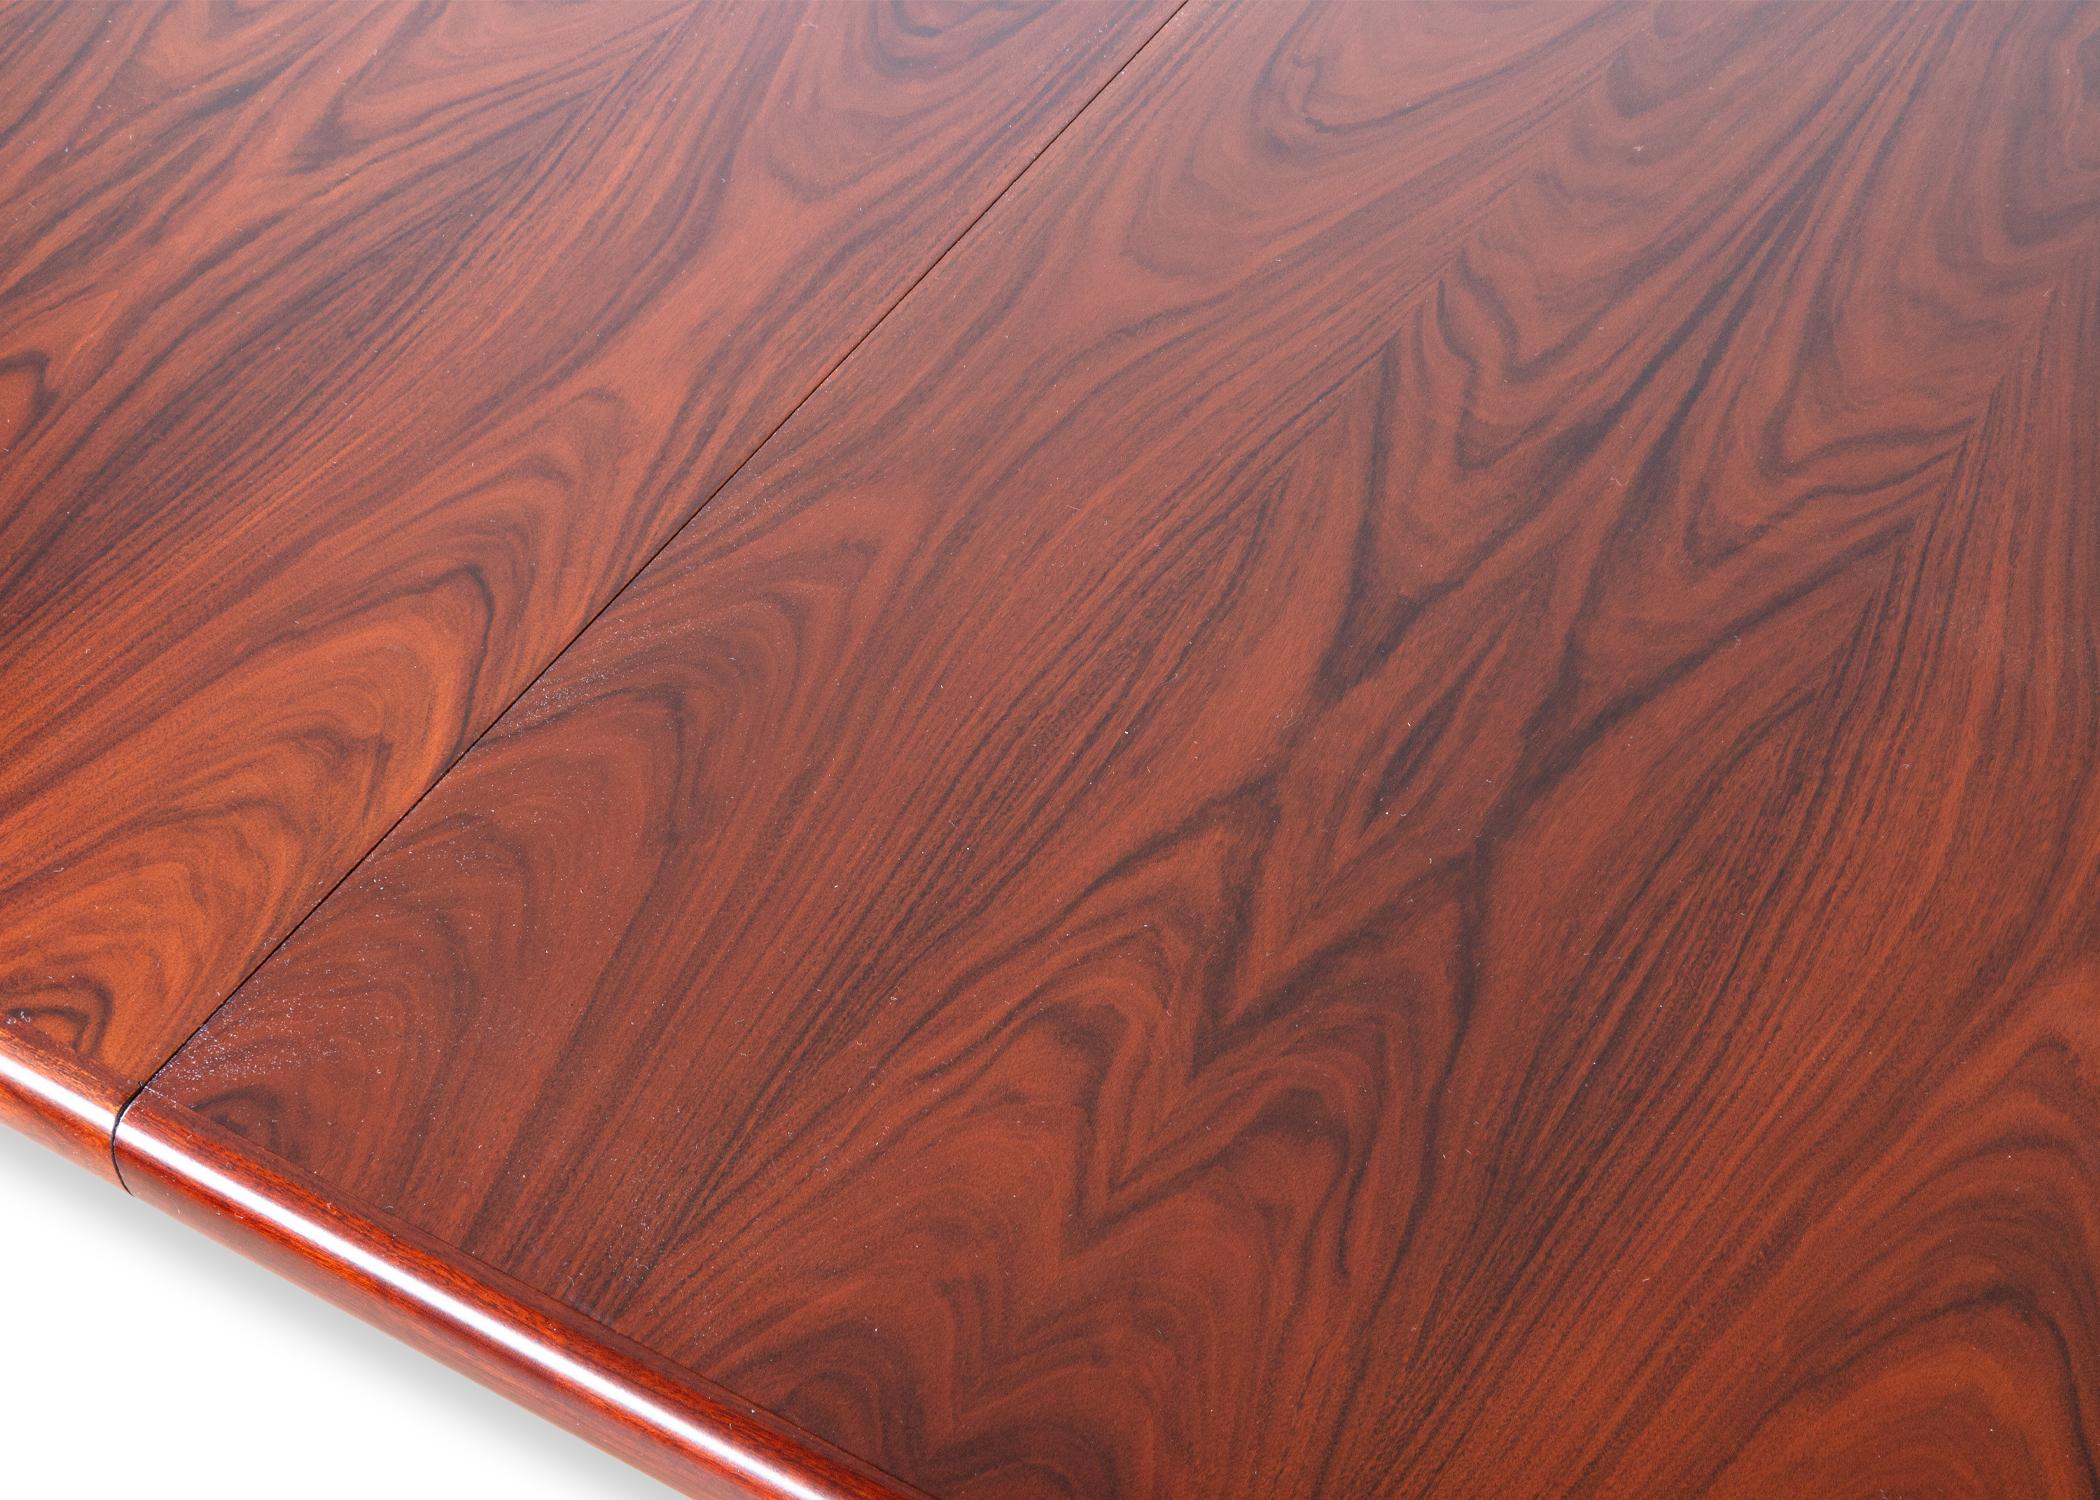 Table de salle à manger Scovby No. 74. Une table de salle à manger danoise vraiment étonnante, fabriquée à partir d'un bois de rose magnifiquement sculpté. Le palissandre est un bois rare et magnifique, dont la couleur et le grain ne ressemblent à